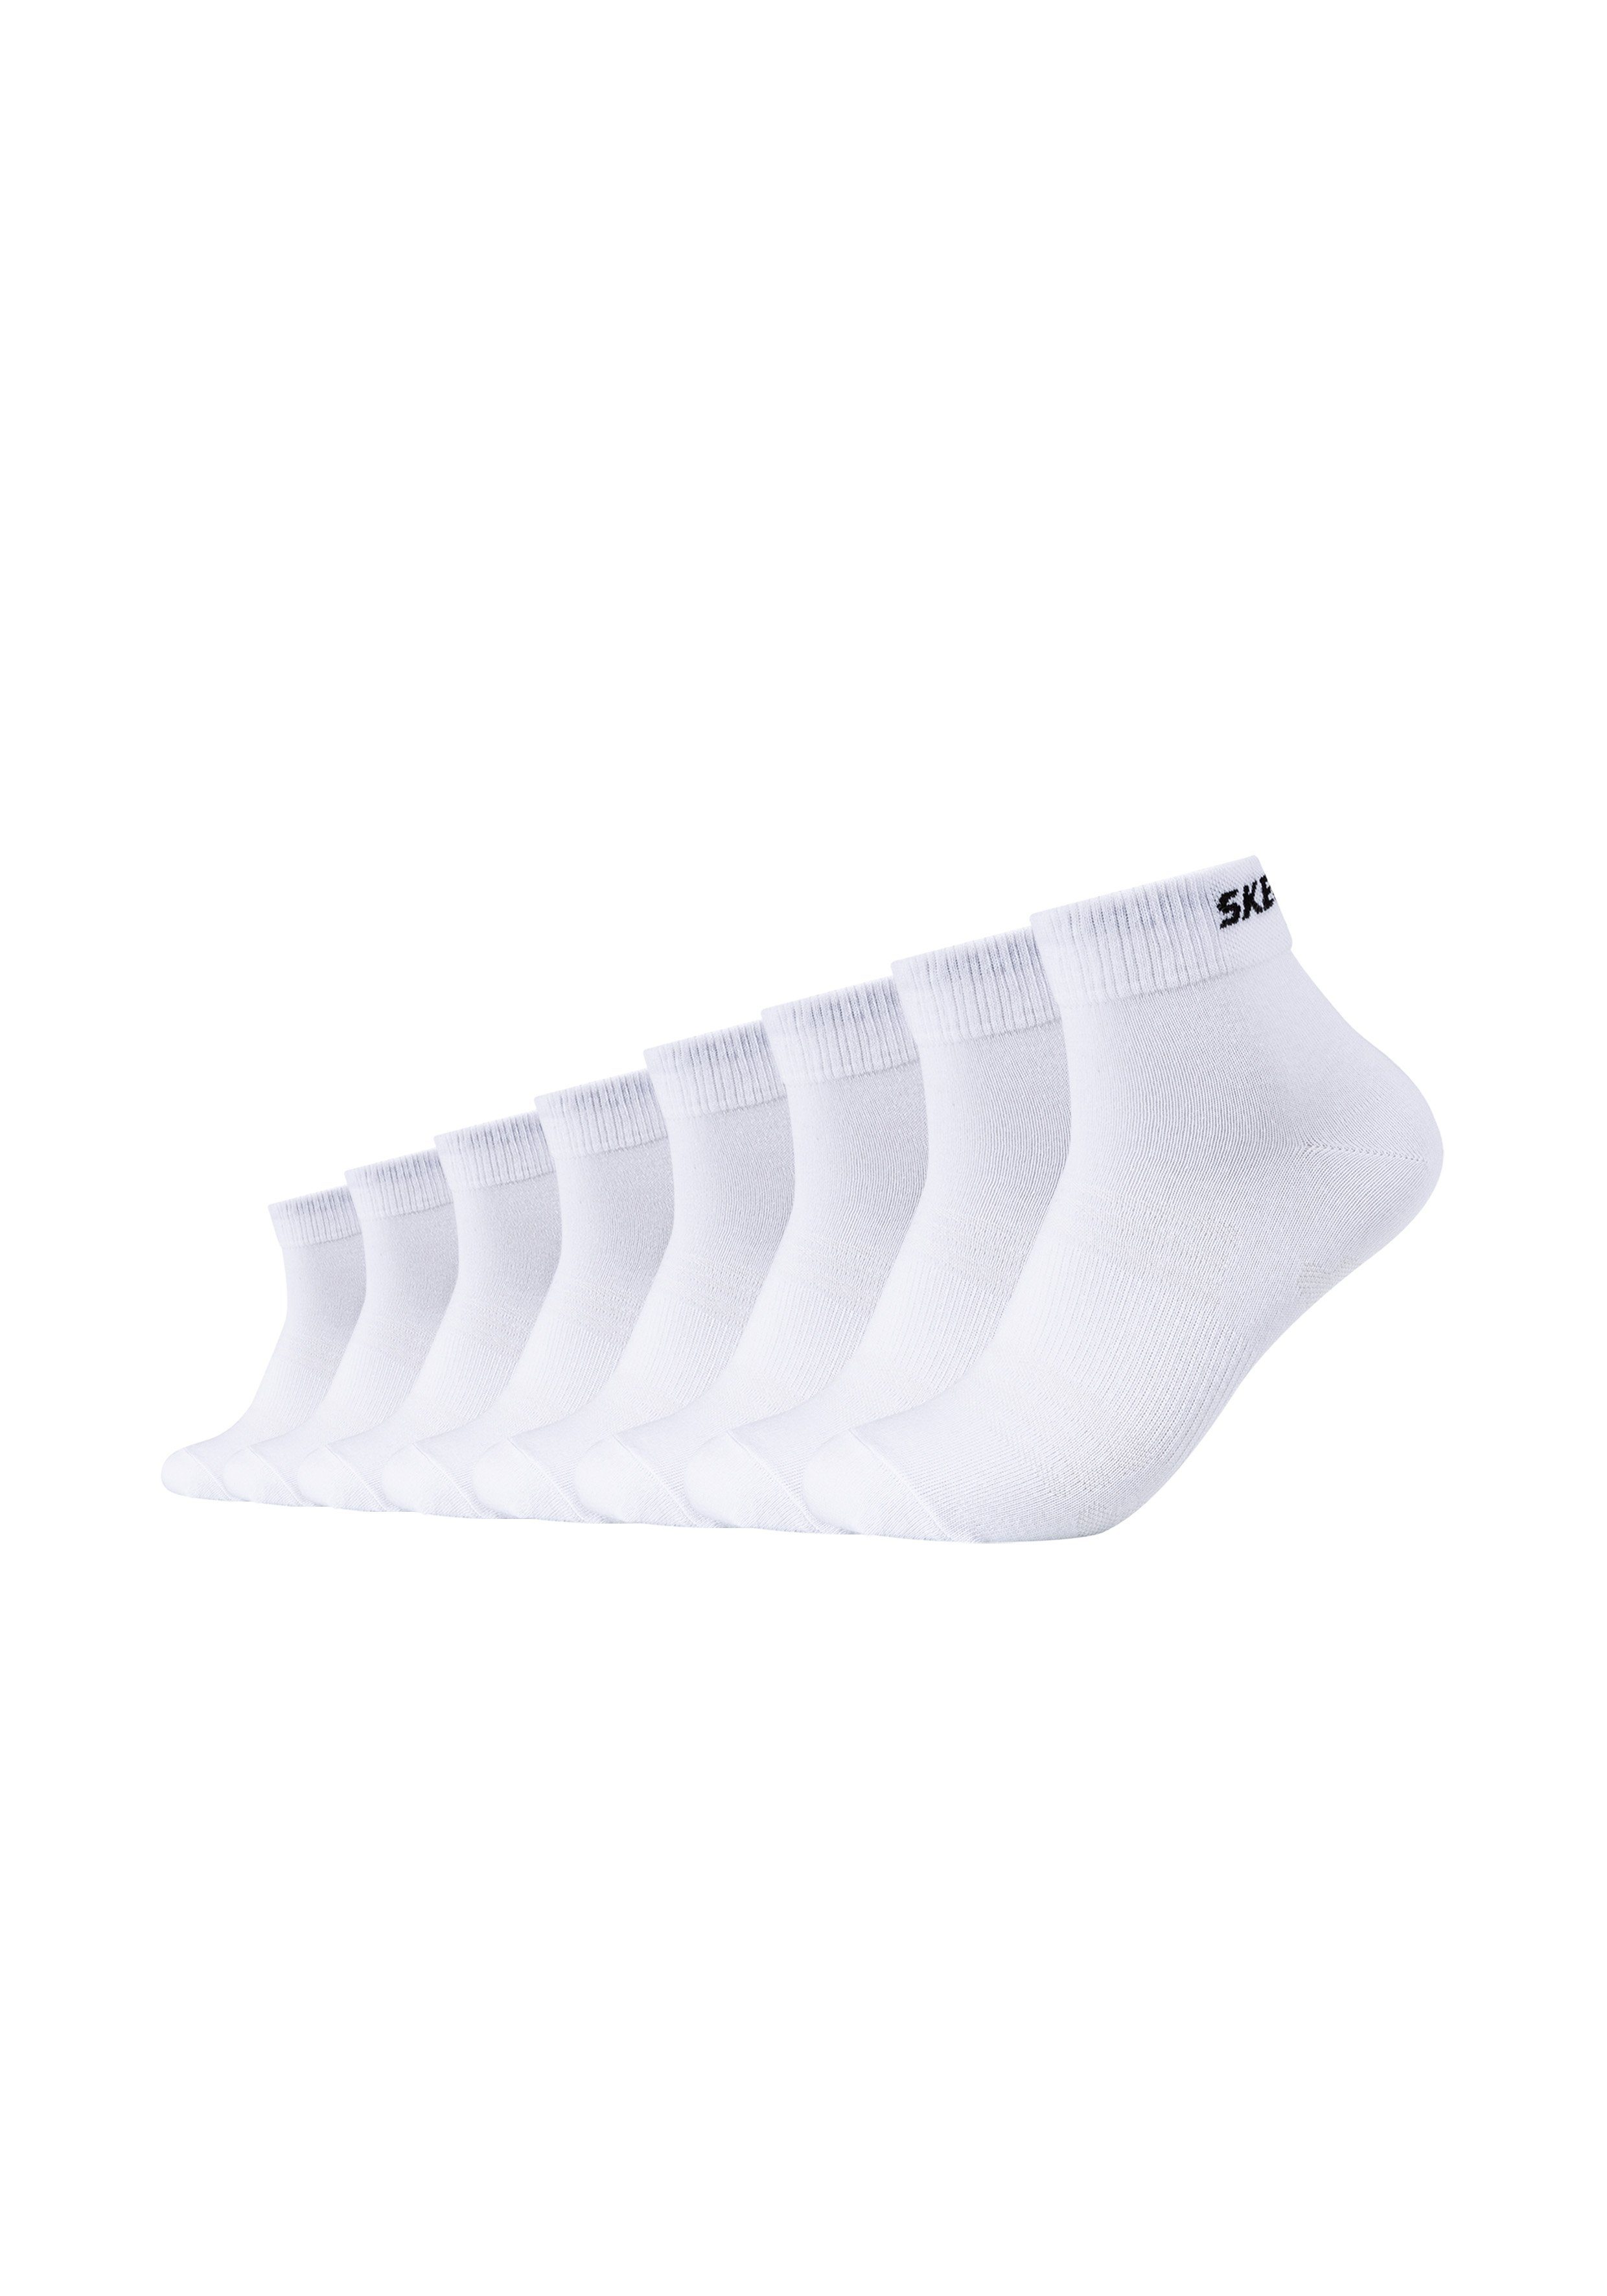 Skechers Socken im 8er-Pack mit schickem Markenschriftzug white in Schwarz Damen Bekleidung Strumpfware Socken 